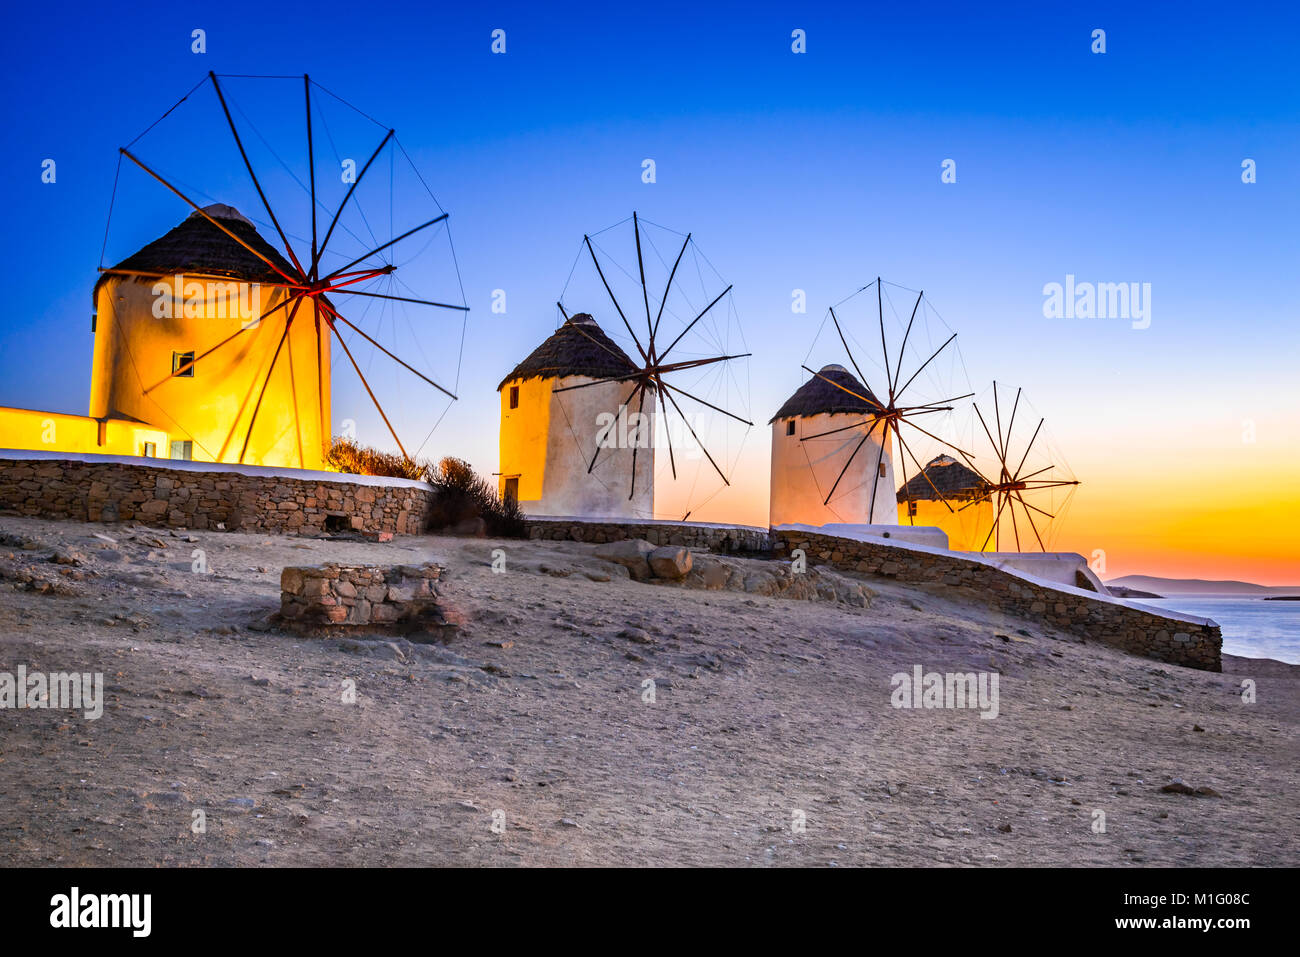 Mykonos, Grecia. Kato Mili son icónicos de molino de viento de la isla griega de Mykonos, Islas Cícladas. Foto de stock